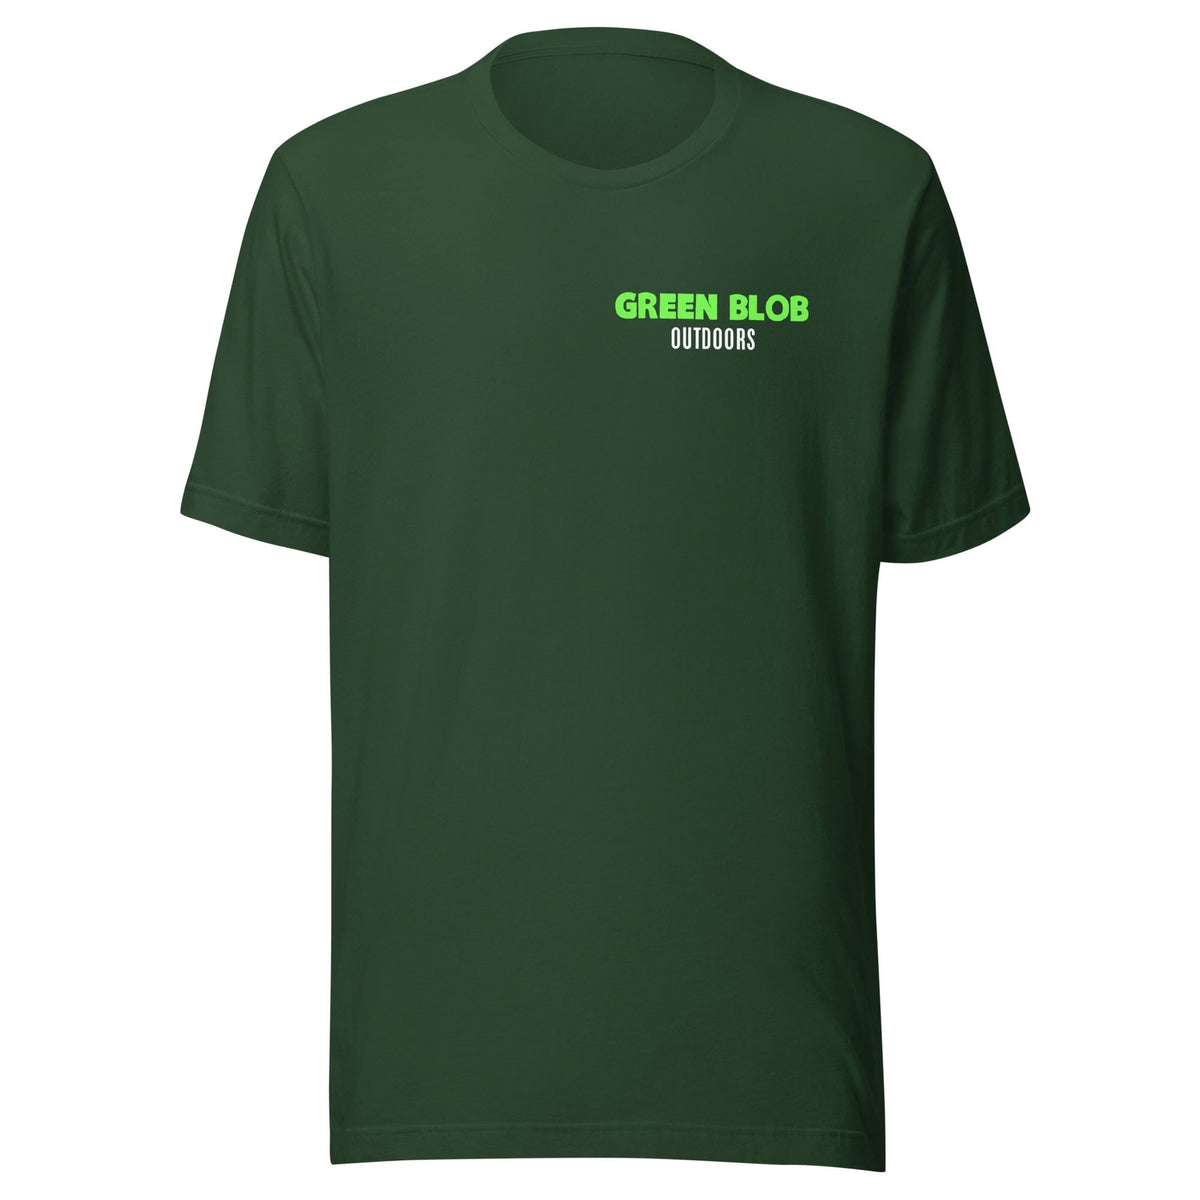 Luminous Lure T-Shirt Green Blob Outdoors Forest S 